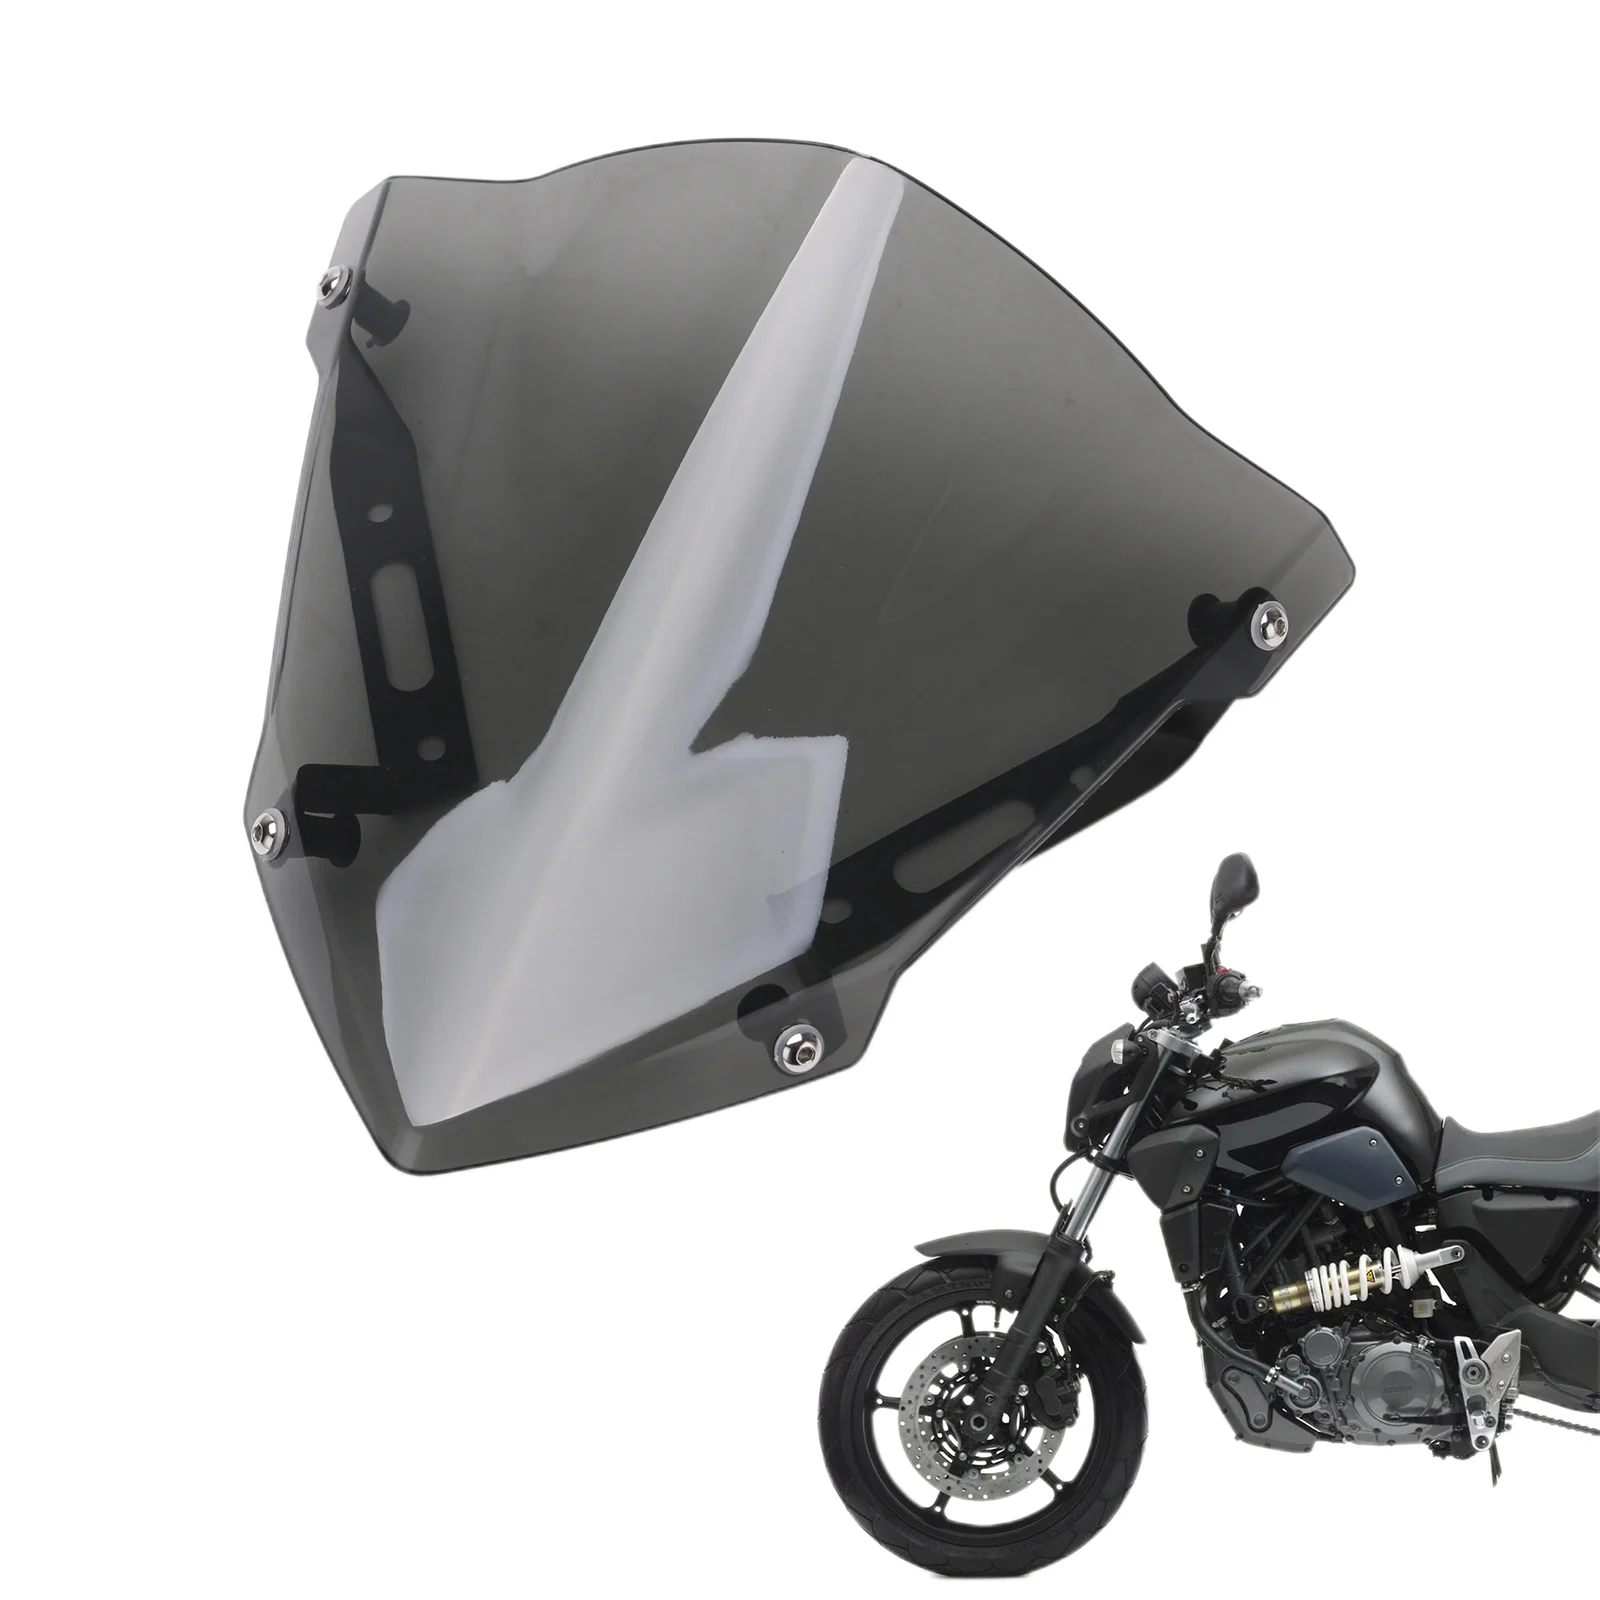 

ПВХ защита для лобового стекла мотоцикла для езды на ветровом стекле, ветрозащитный экран для мотоцикла, ветроотражатель для YAMAHA MT-07 2018-2020